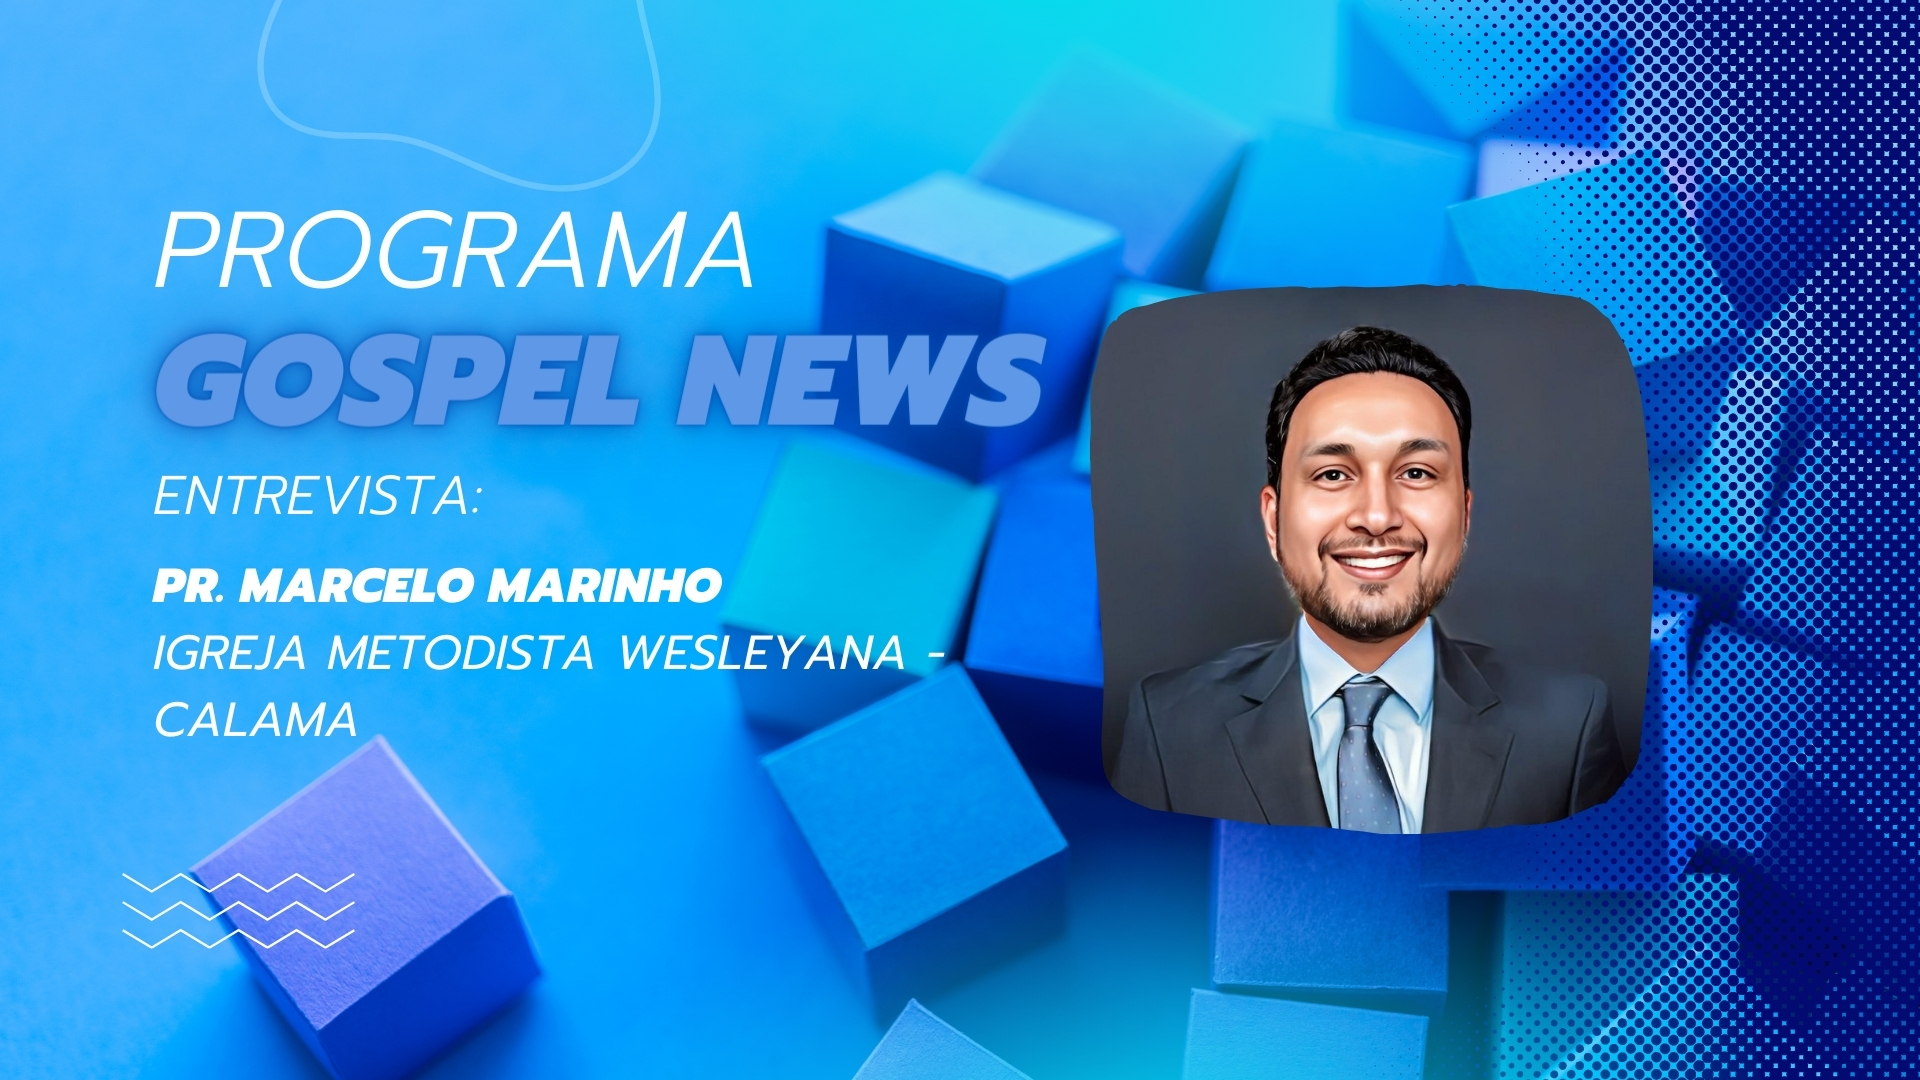 Programa Gospel News enrtrevista: Pr. Marcelo Marinho